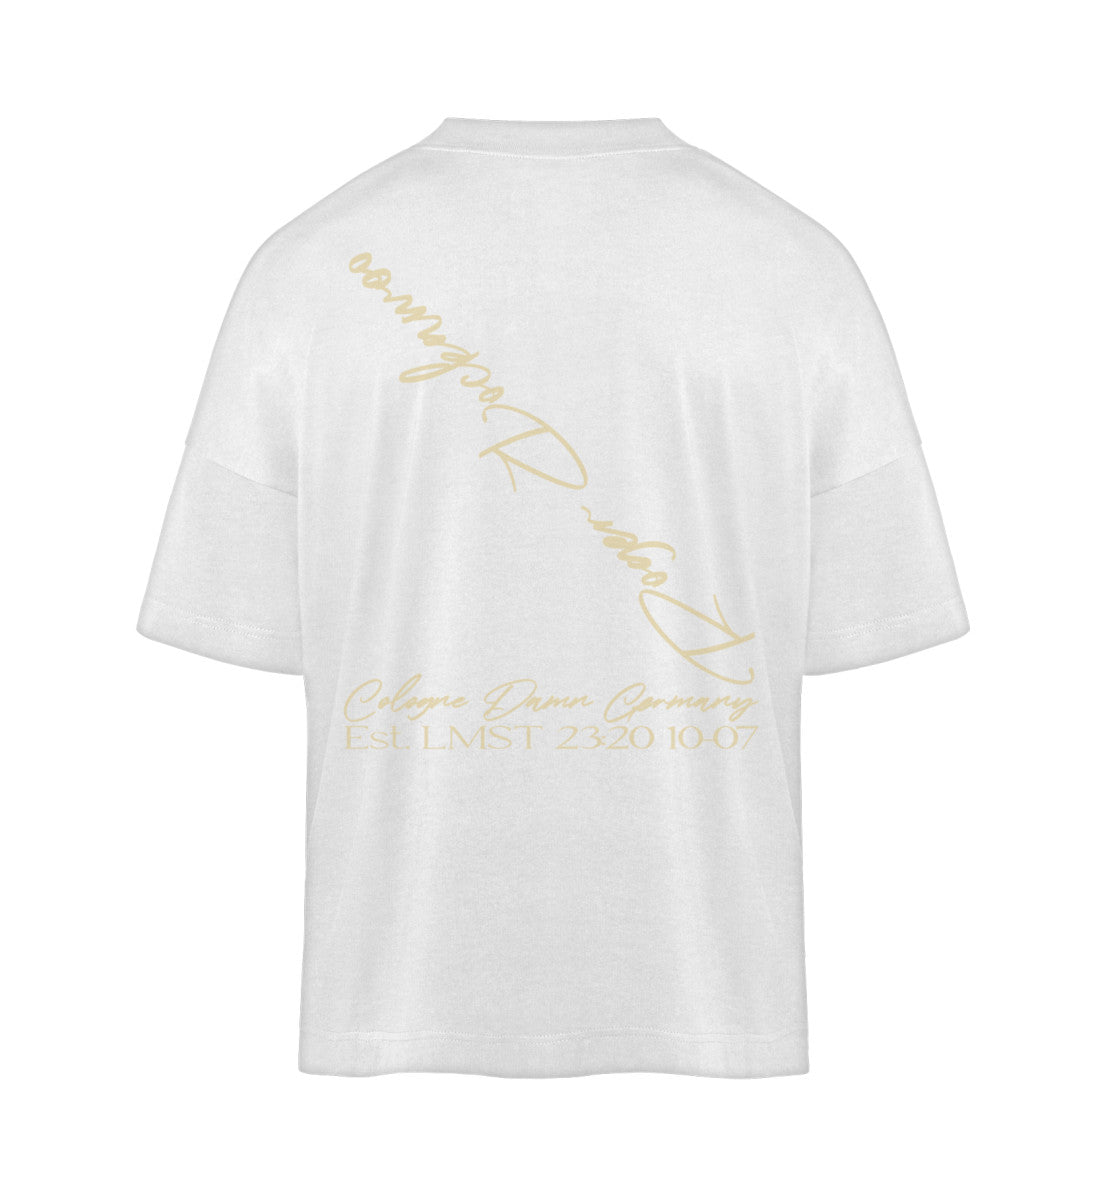 Weißes T-Shirt Unisex Oversize Fit für Frauen und Männer bedruckt mit dem Design der Roger Rockawoo Kollektion hip hop symbiosis of life